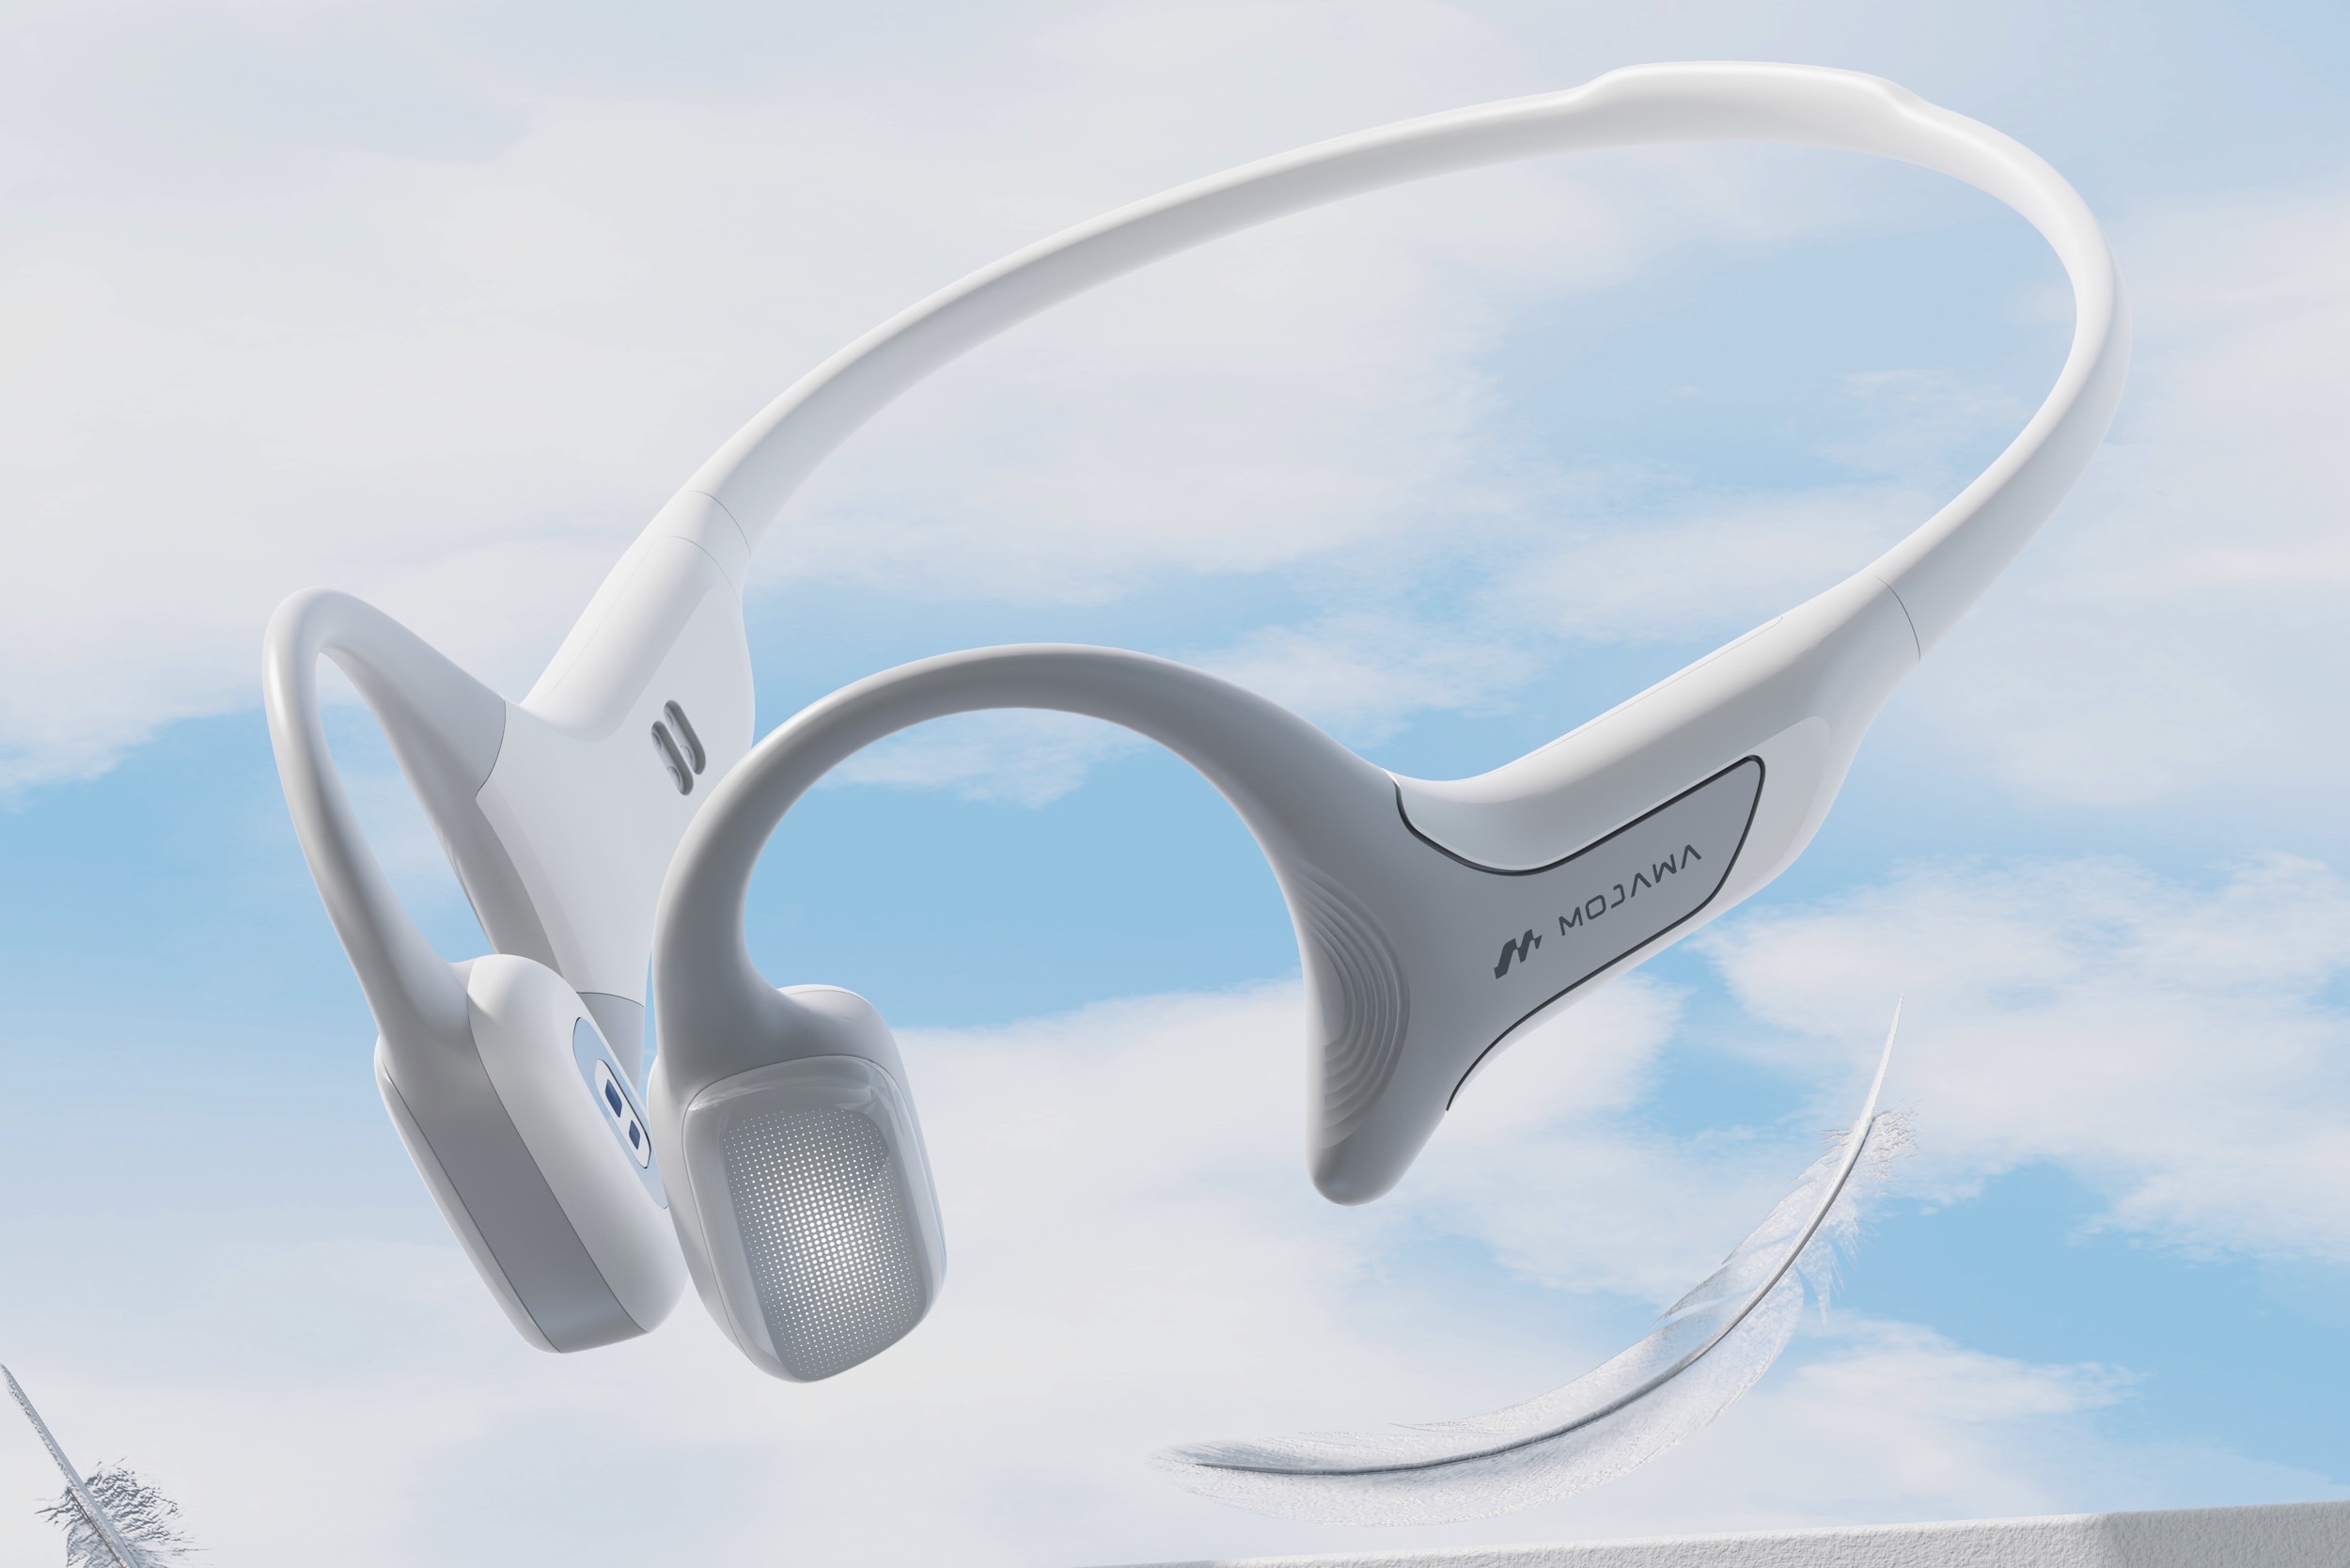 Mojawa HaptiFit Terra bone conduction headphones.